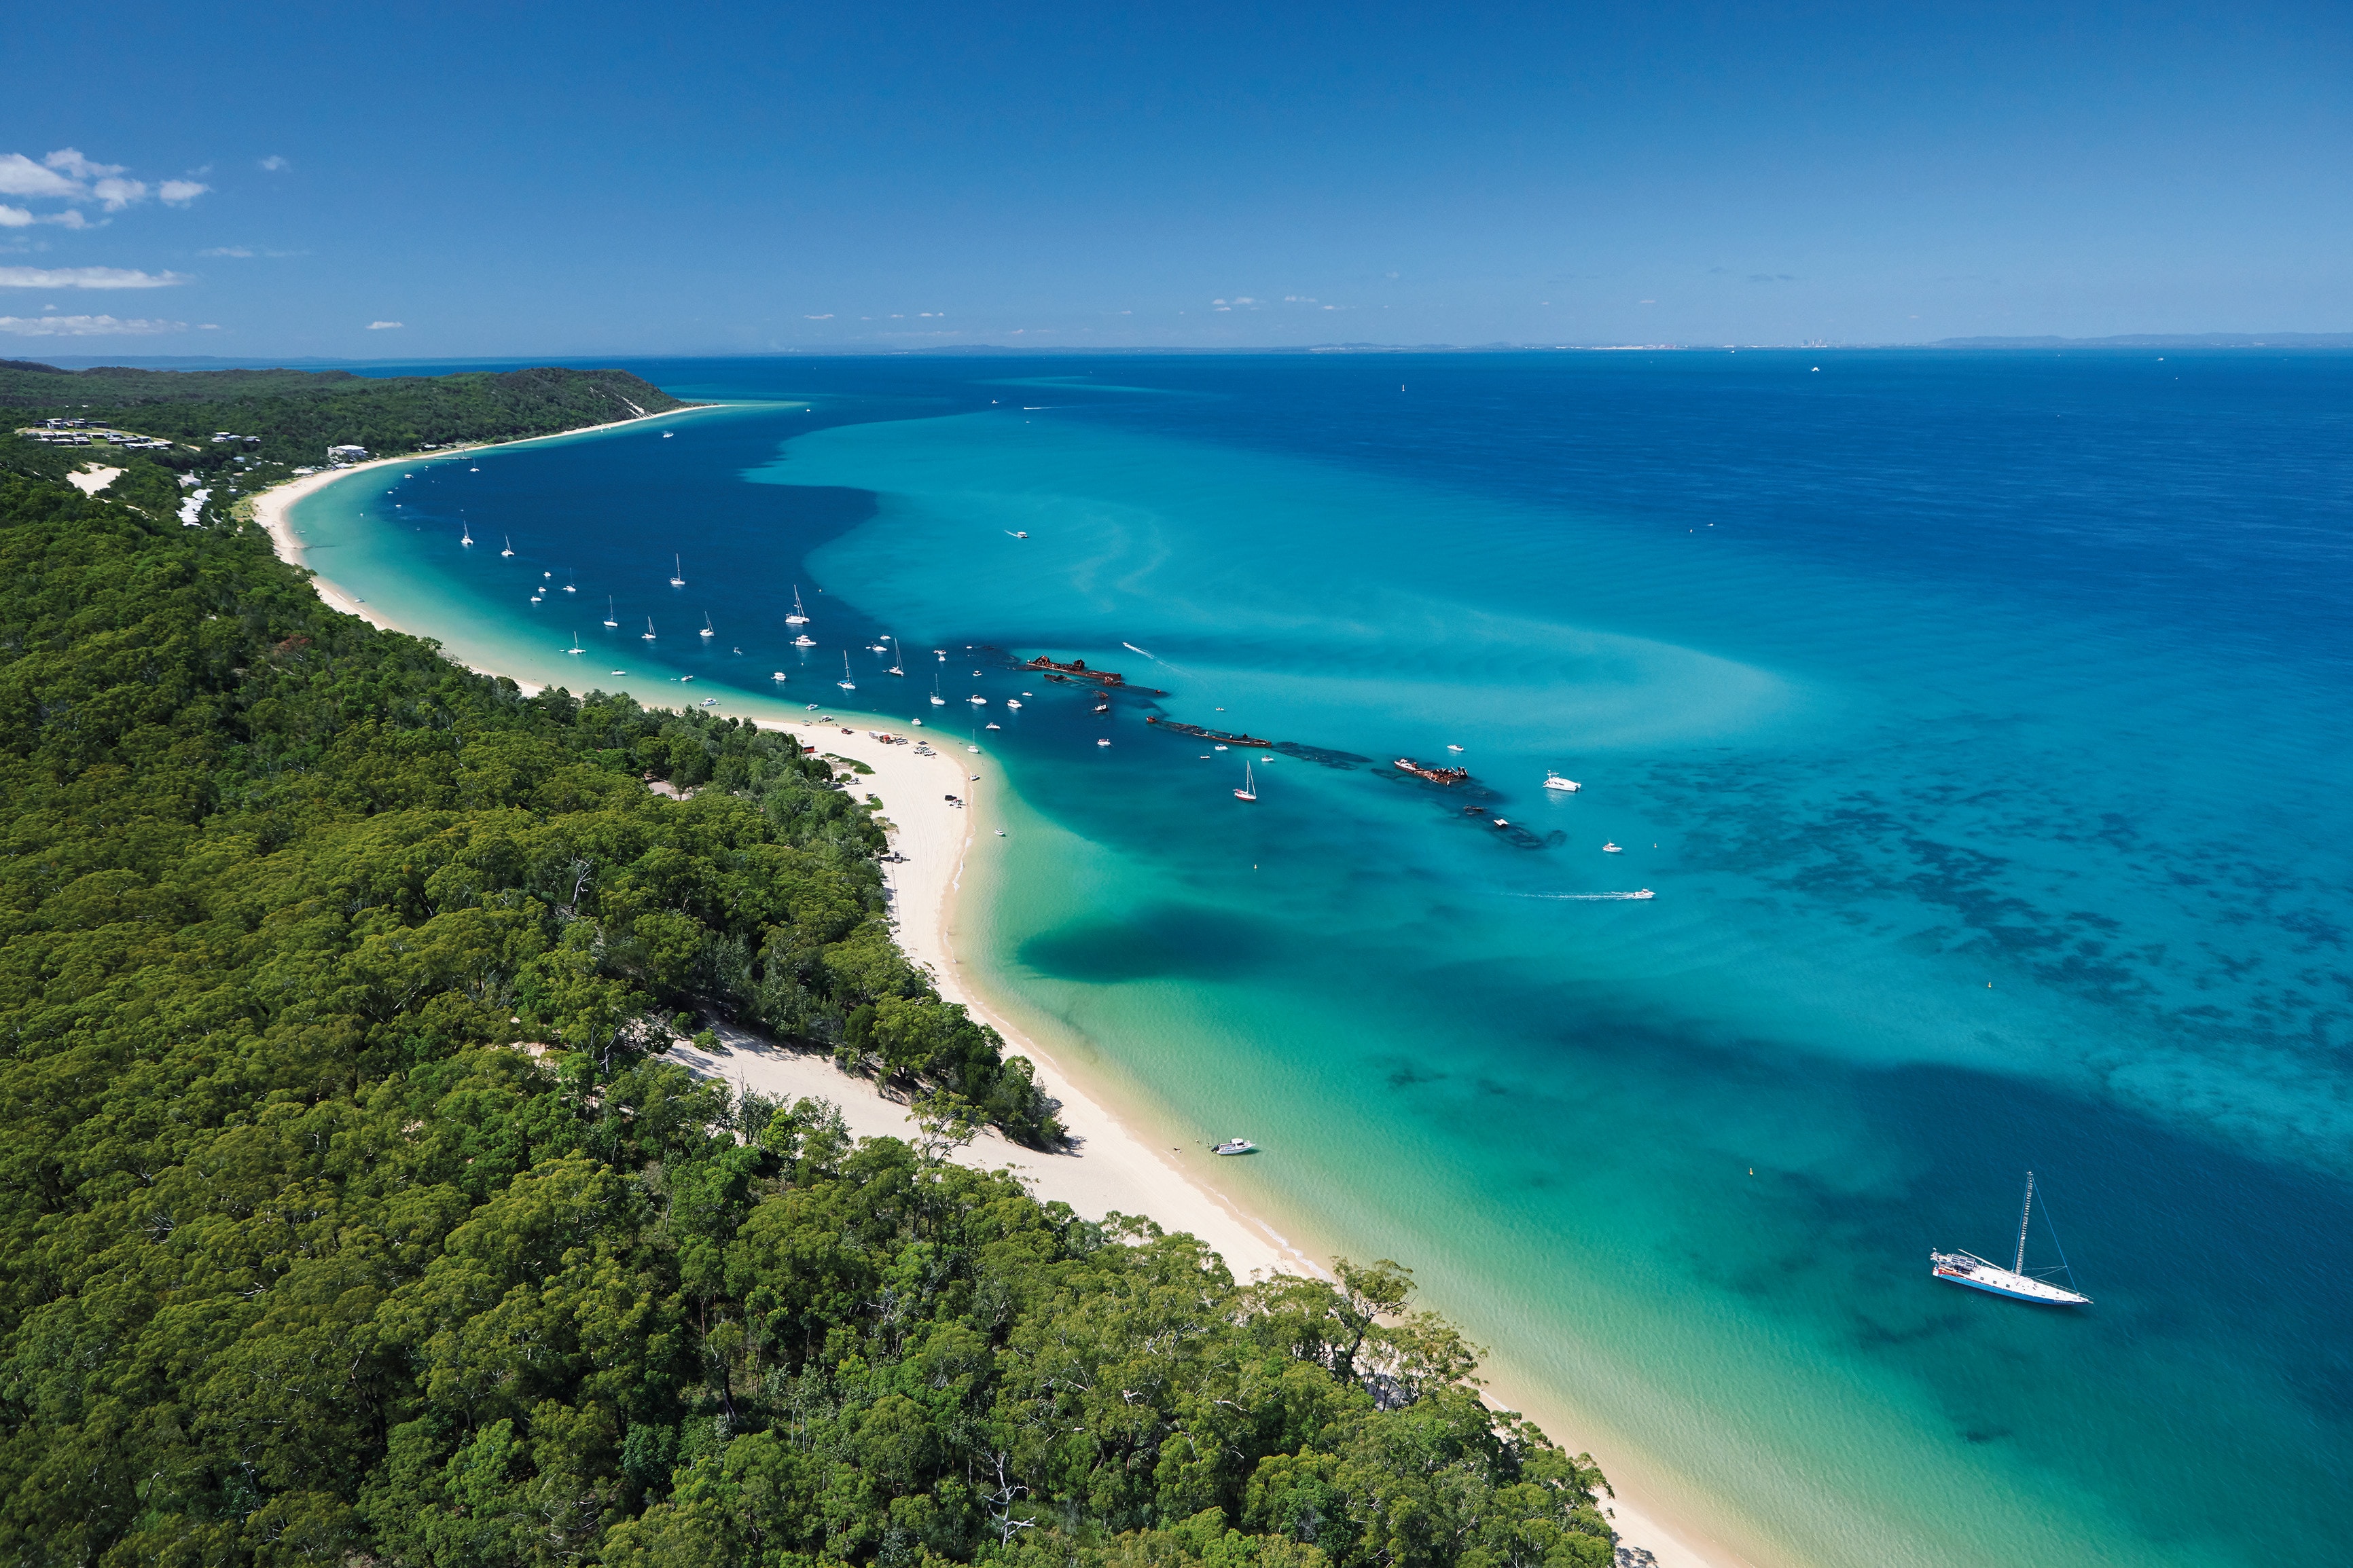 Australia's best swimming beaches - Tourism Australia